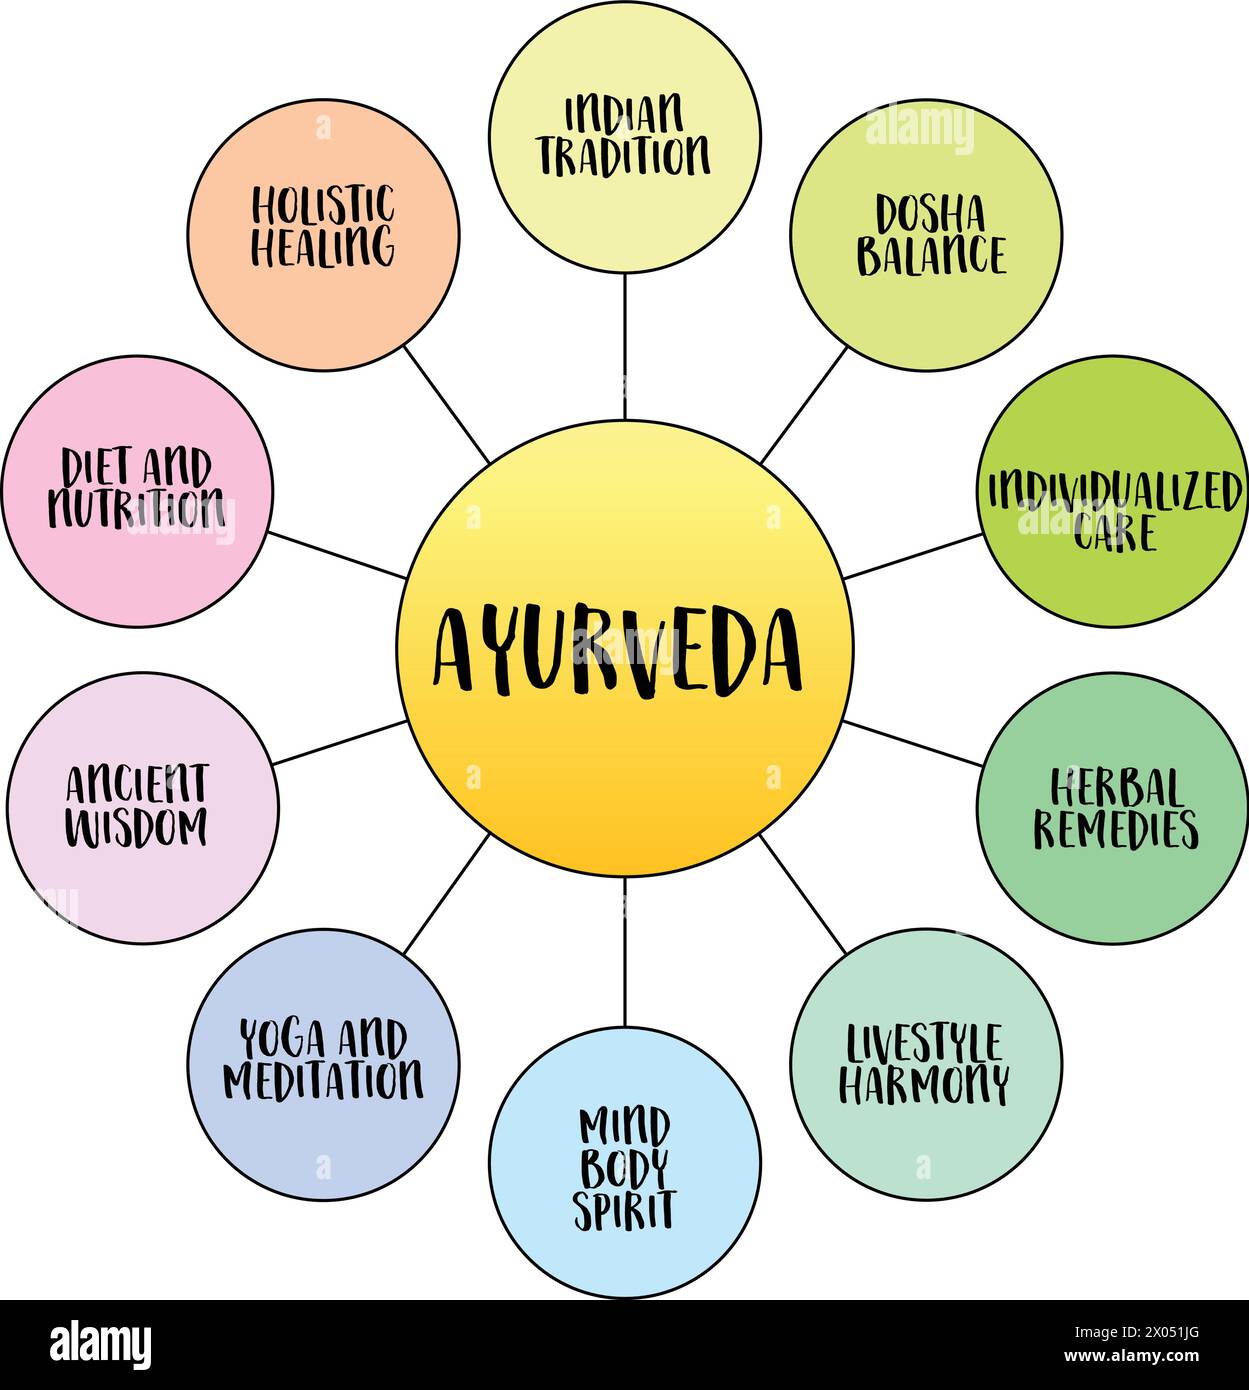 Ayurveda, traditionelle indische Medizin System - Infografiken oder Geistesskizze, Gesundheits- und Heilkonzept Stock Vektor